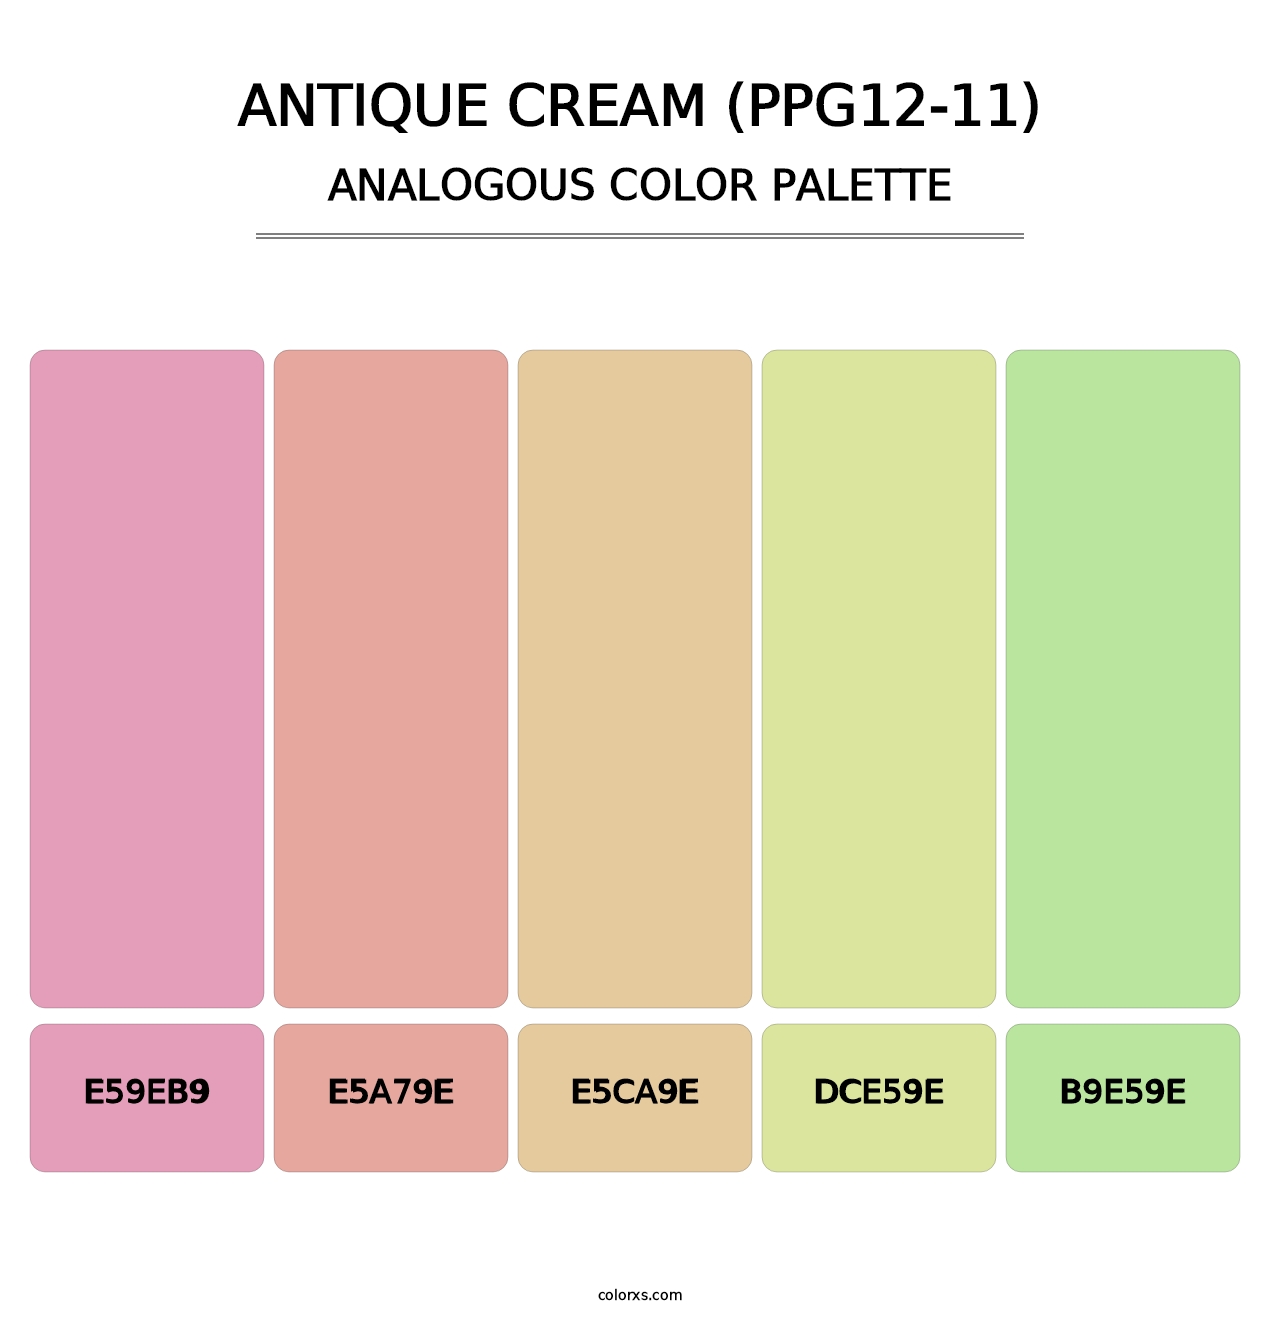 Antique Cream (PPG12-11) - Analogous Color Palette